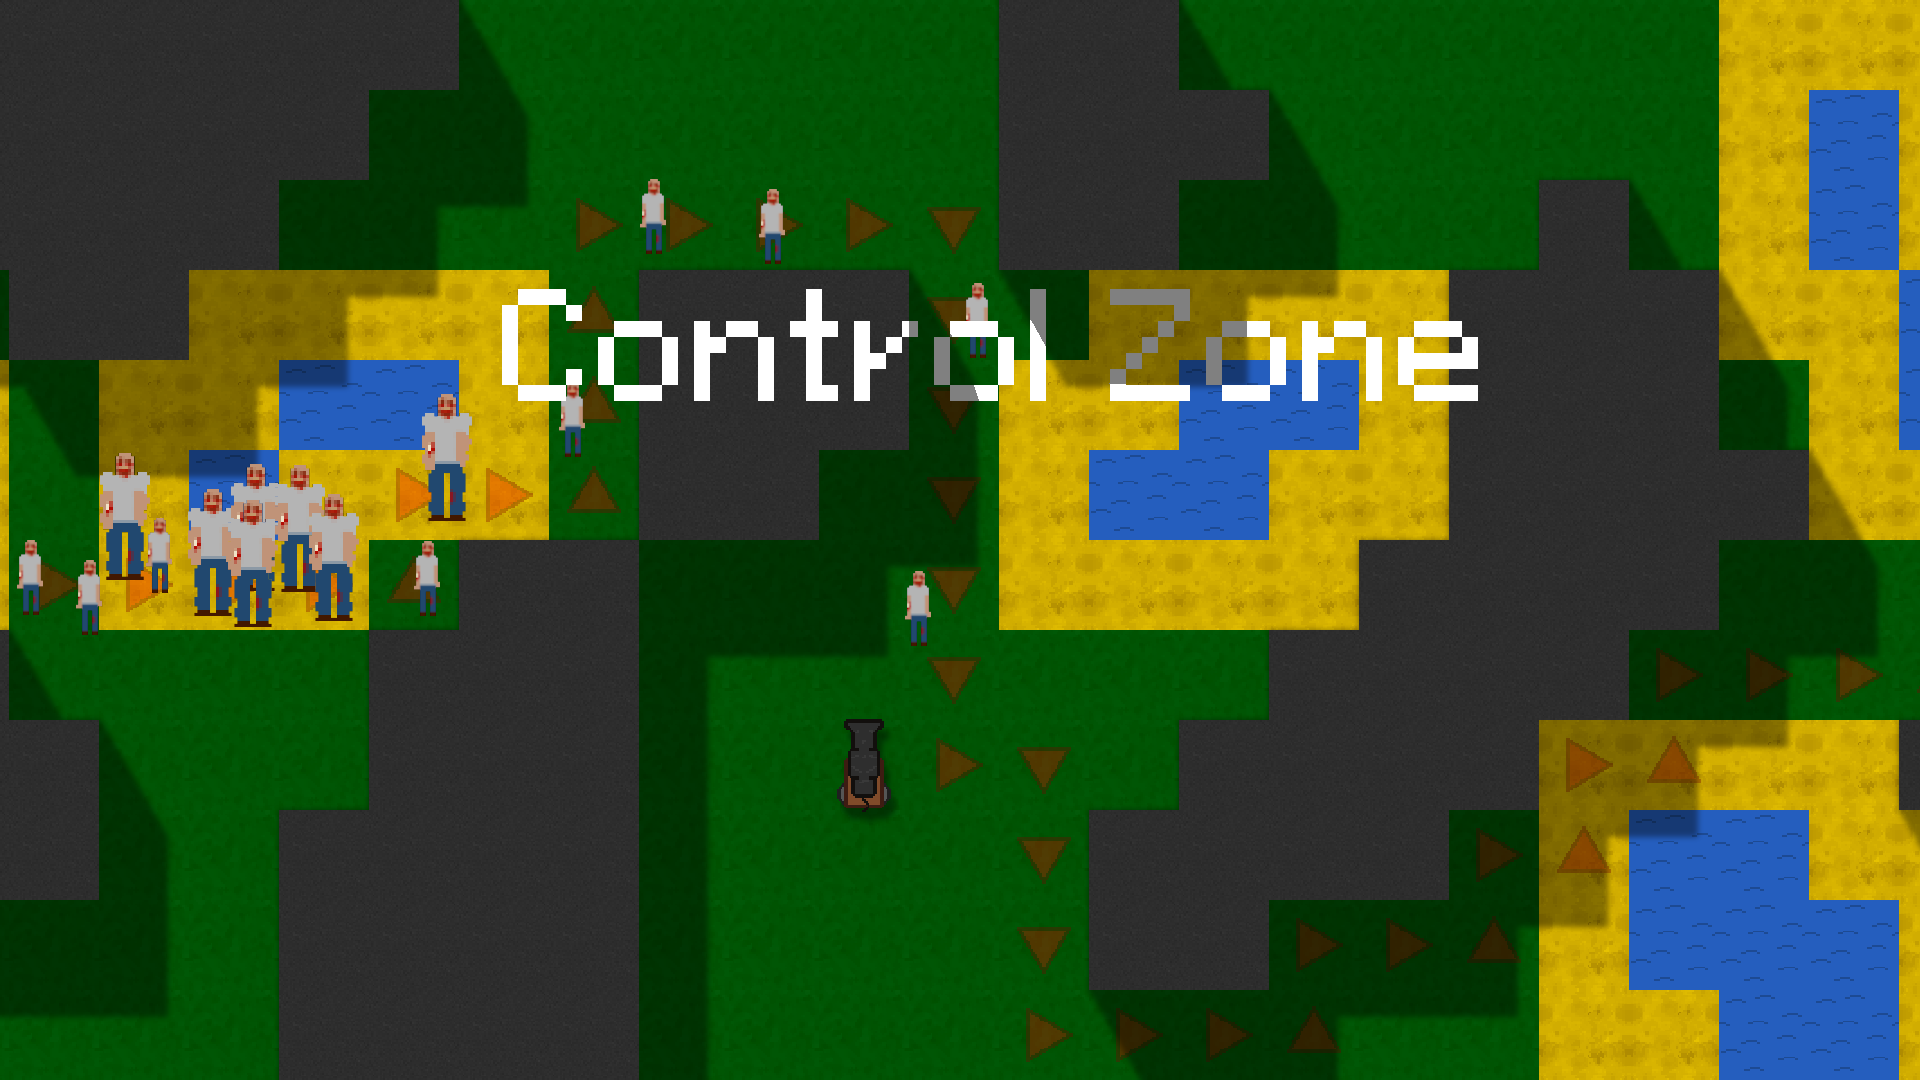 Control Zone